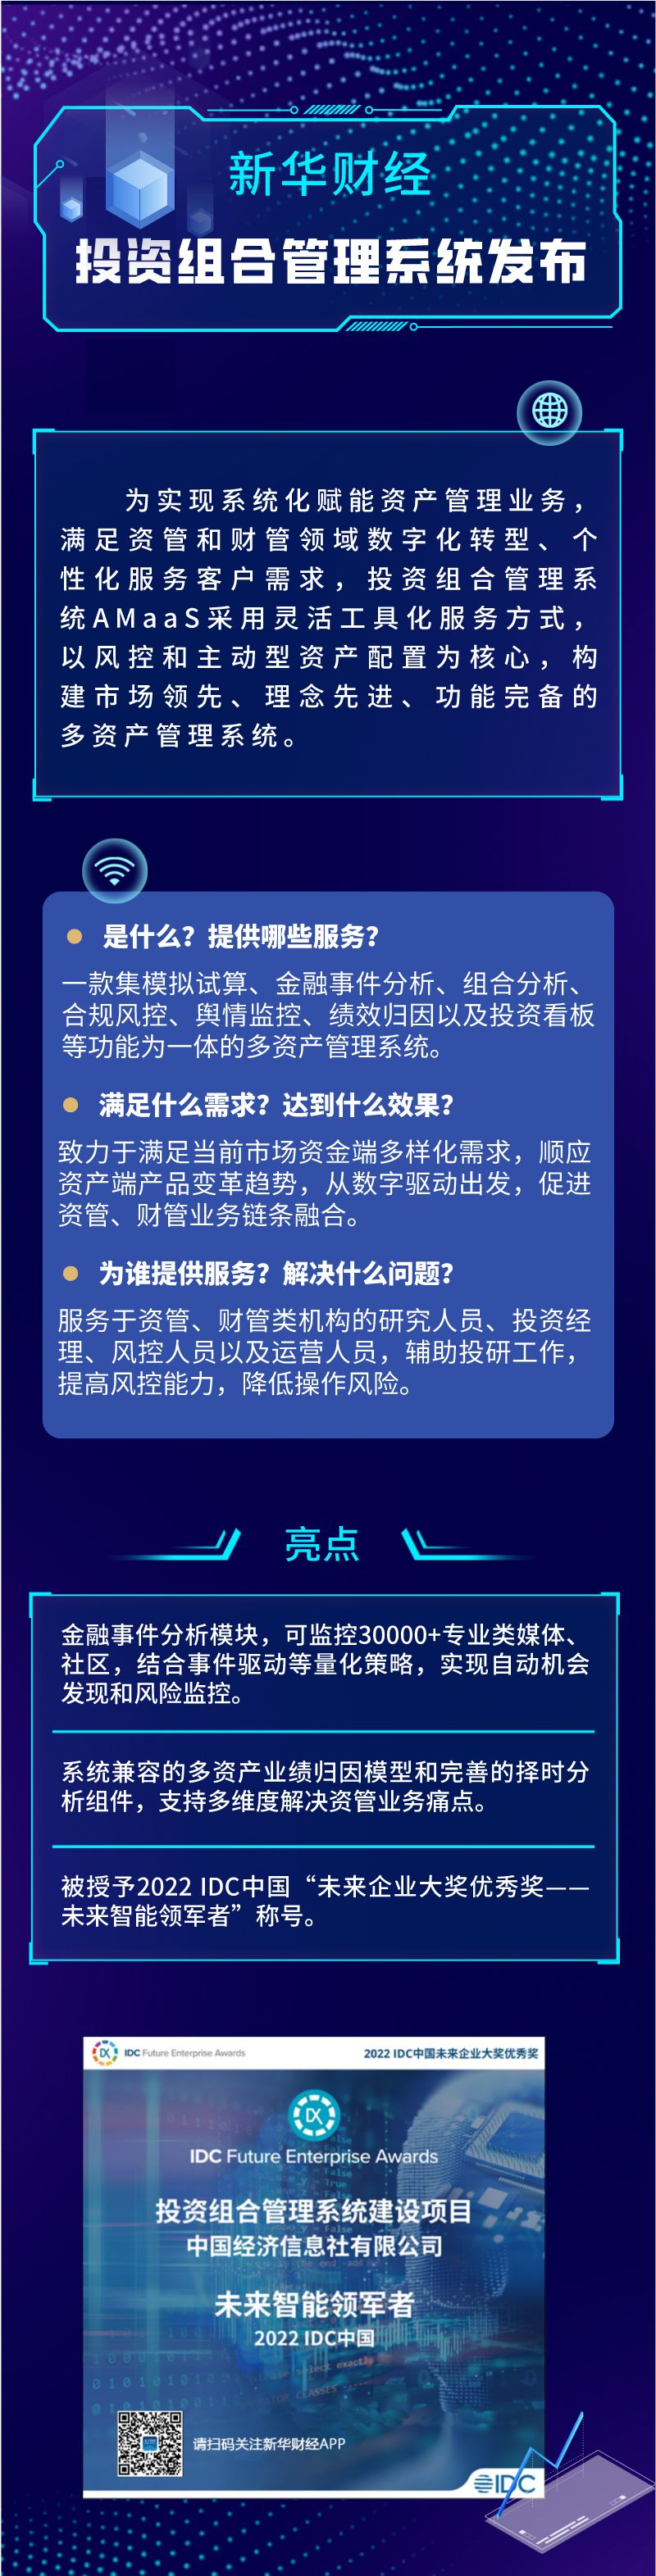 新华财经投资组合管理系统发布.png